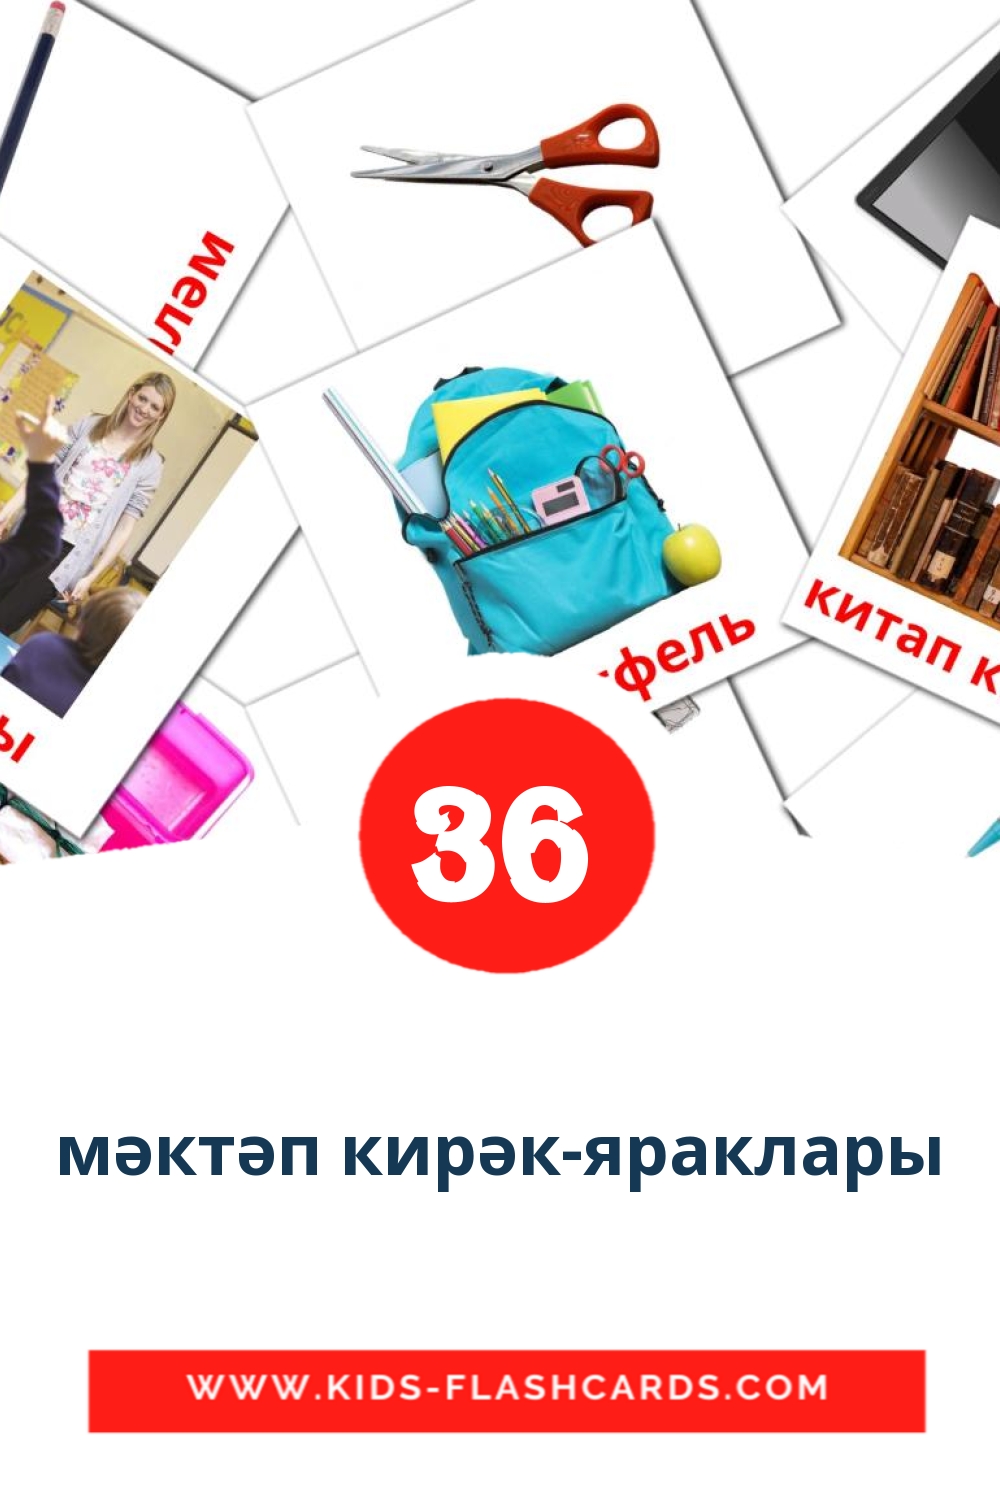 мәктәп кирәк-яраклары на татарском для Детского Сада (36 карточек)